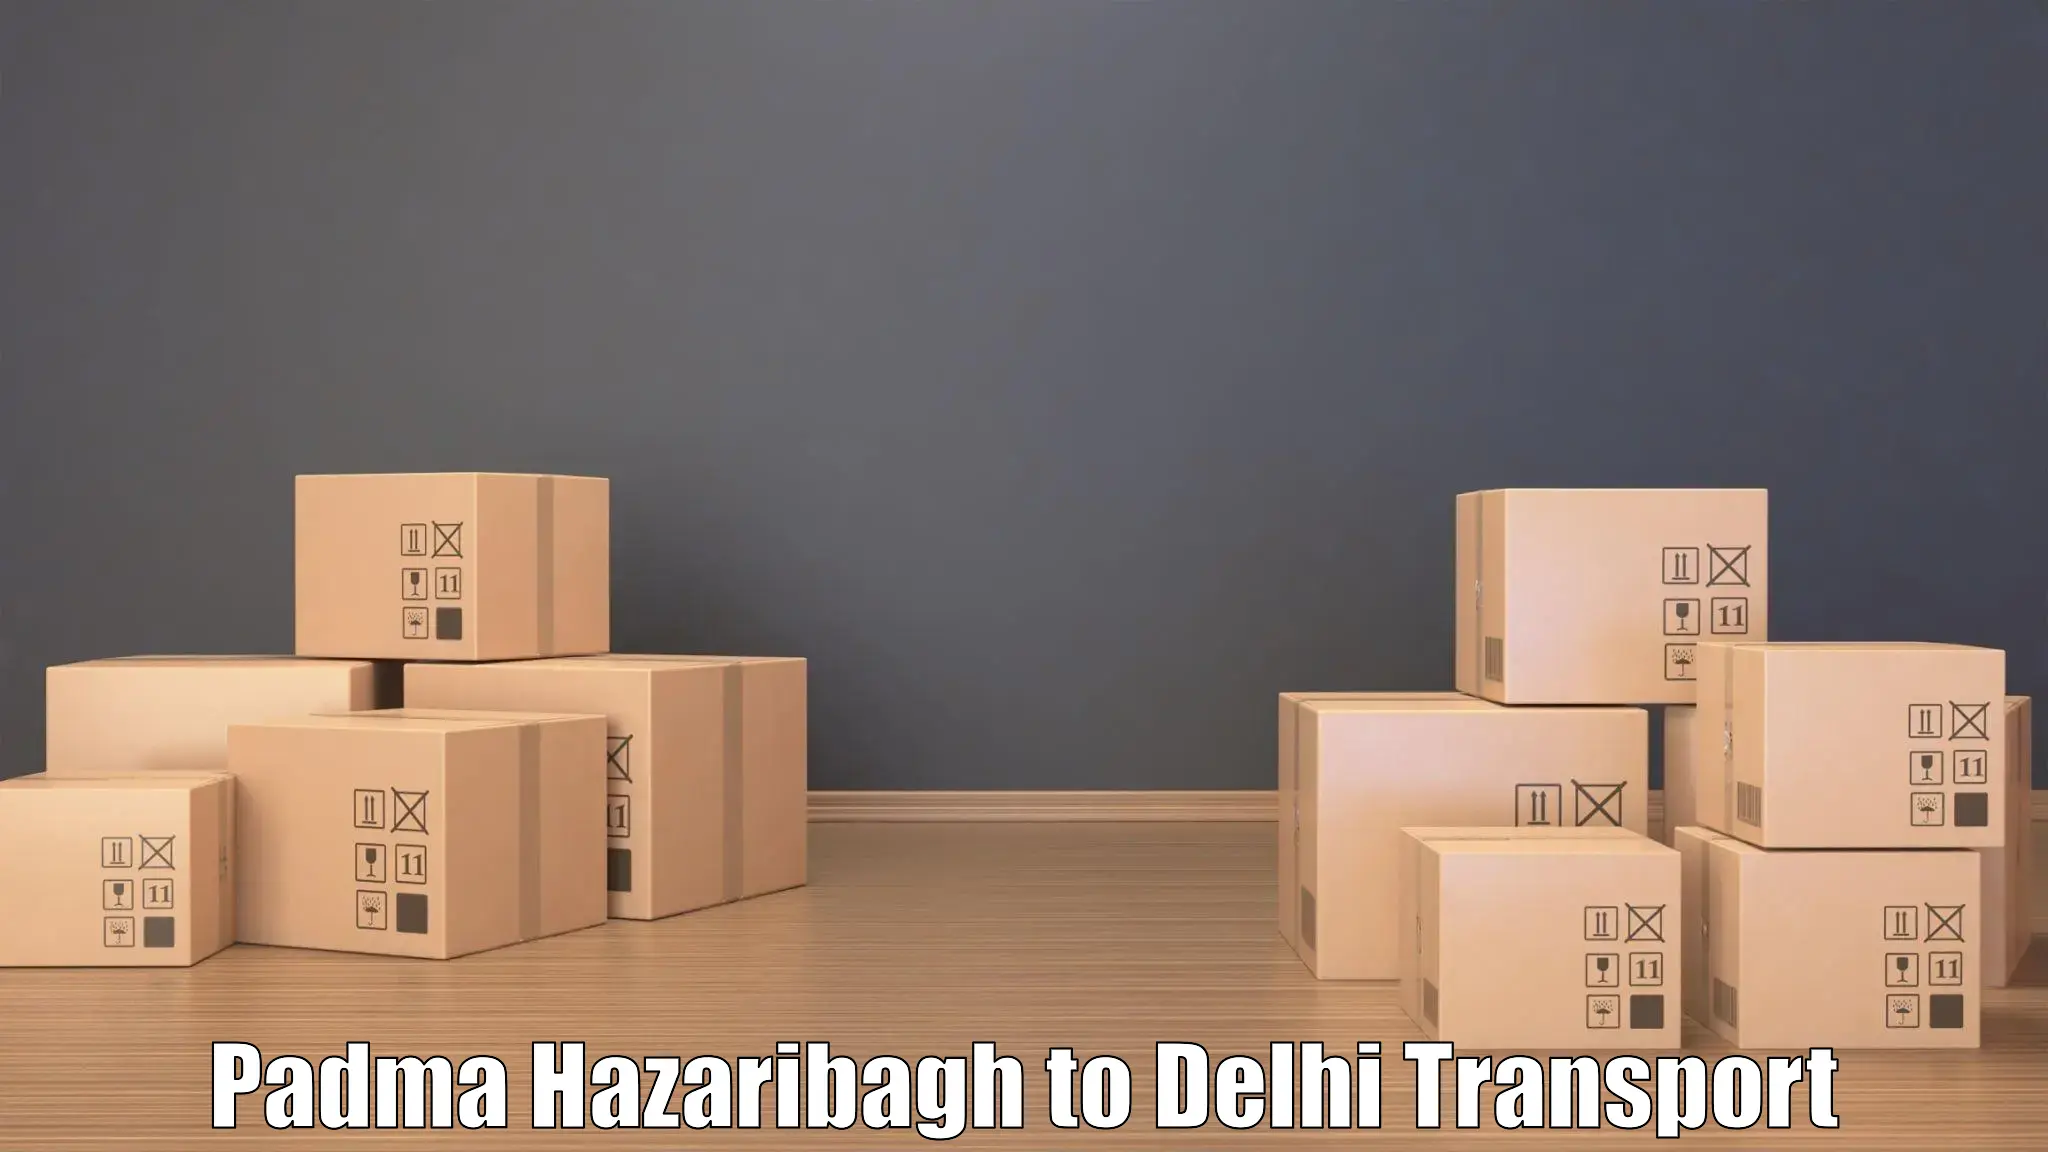 India truck logistics services Padma Hazaribagh to NIT Delhi